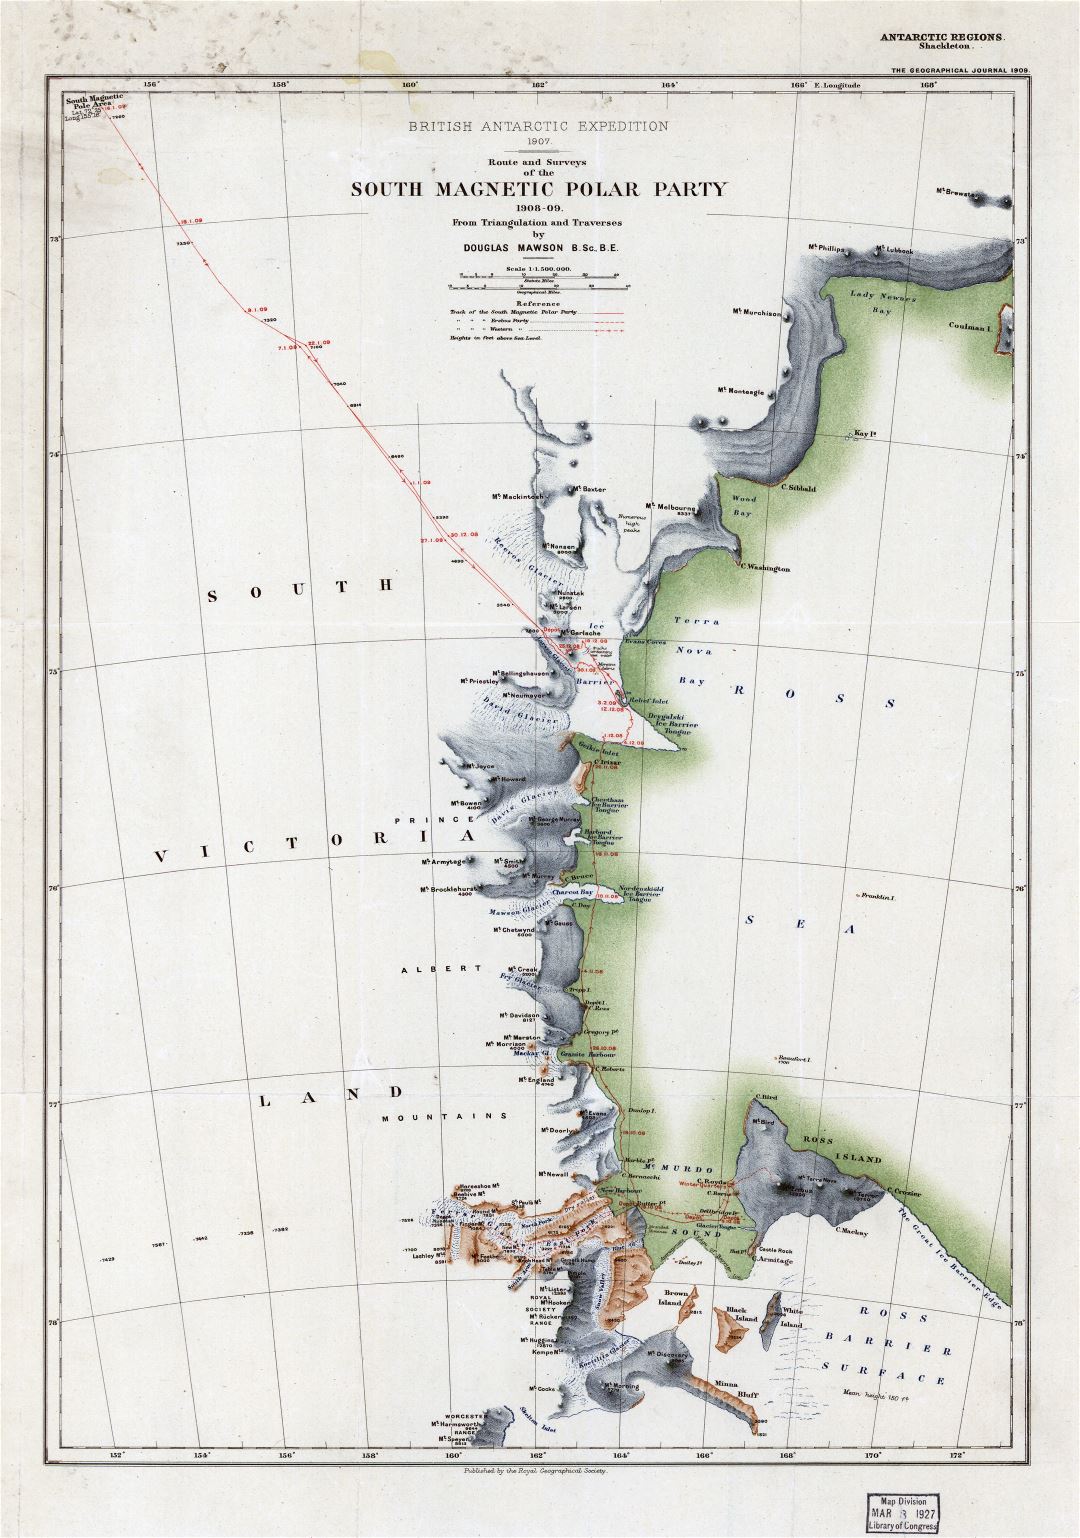 Viejo mapa a gran escala de la ruta y encuestas del Partido del Polo Sur Magnético - 1908-1909